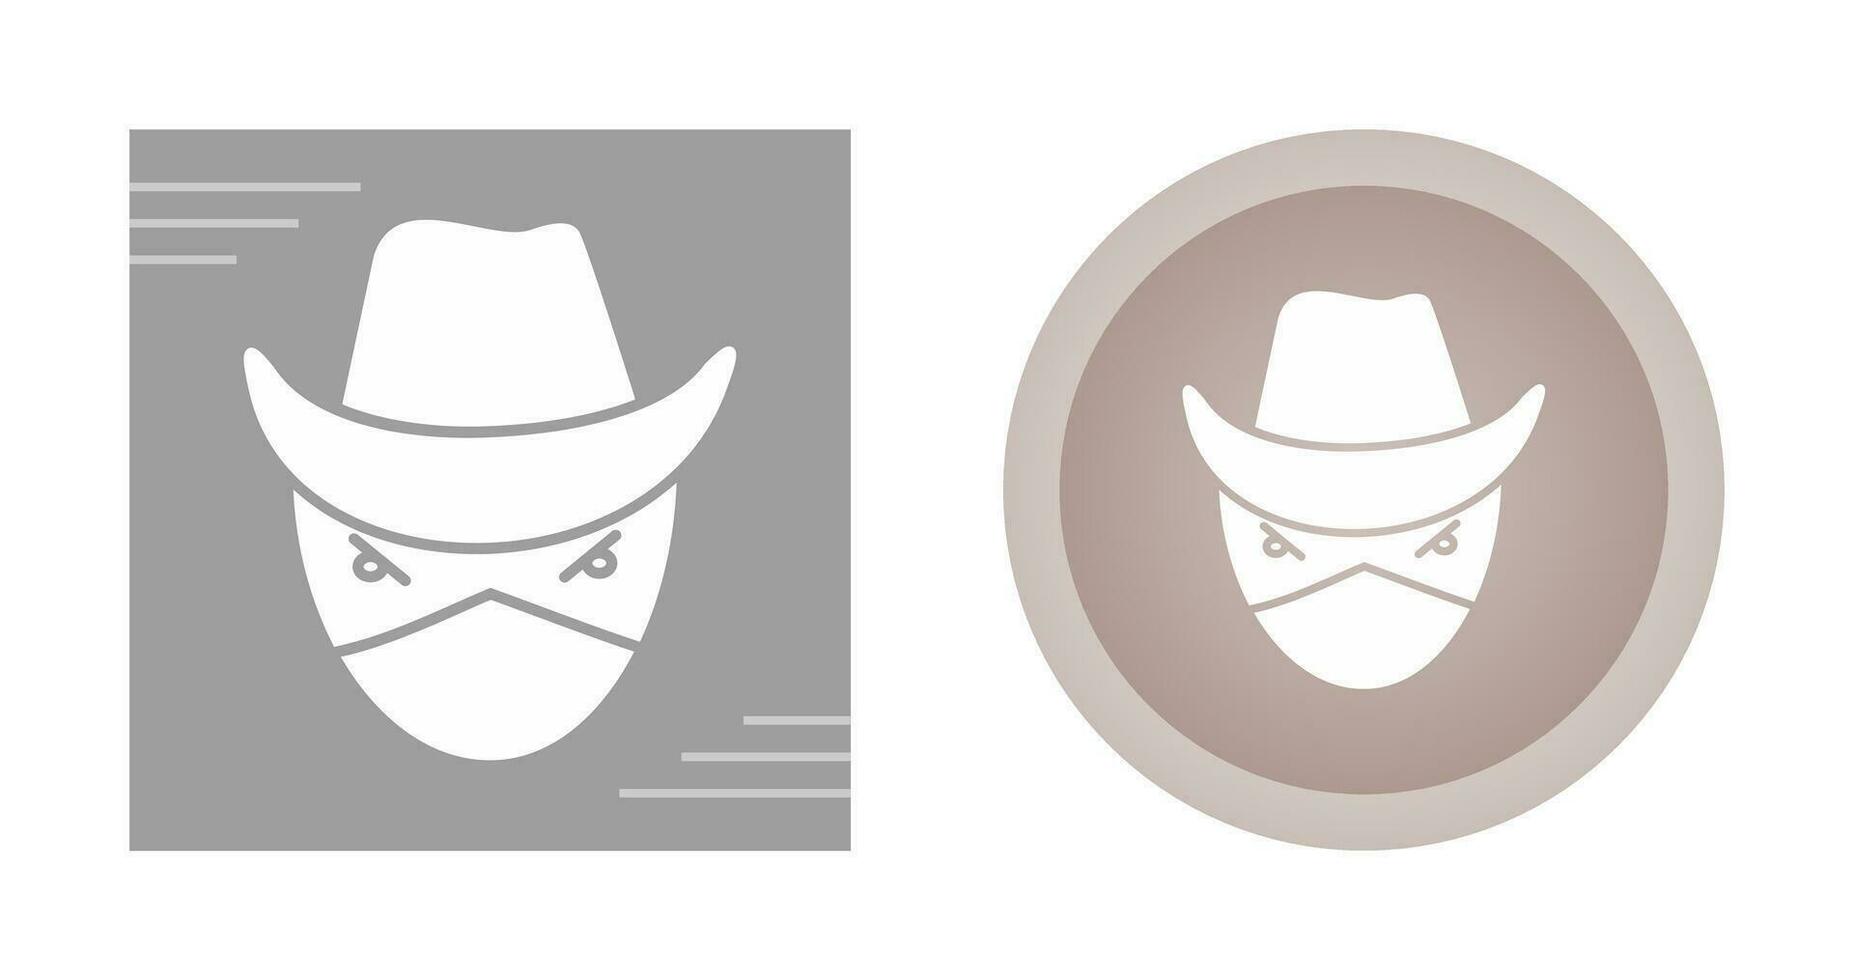 Bandit Vector Icon